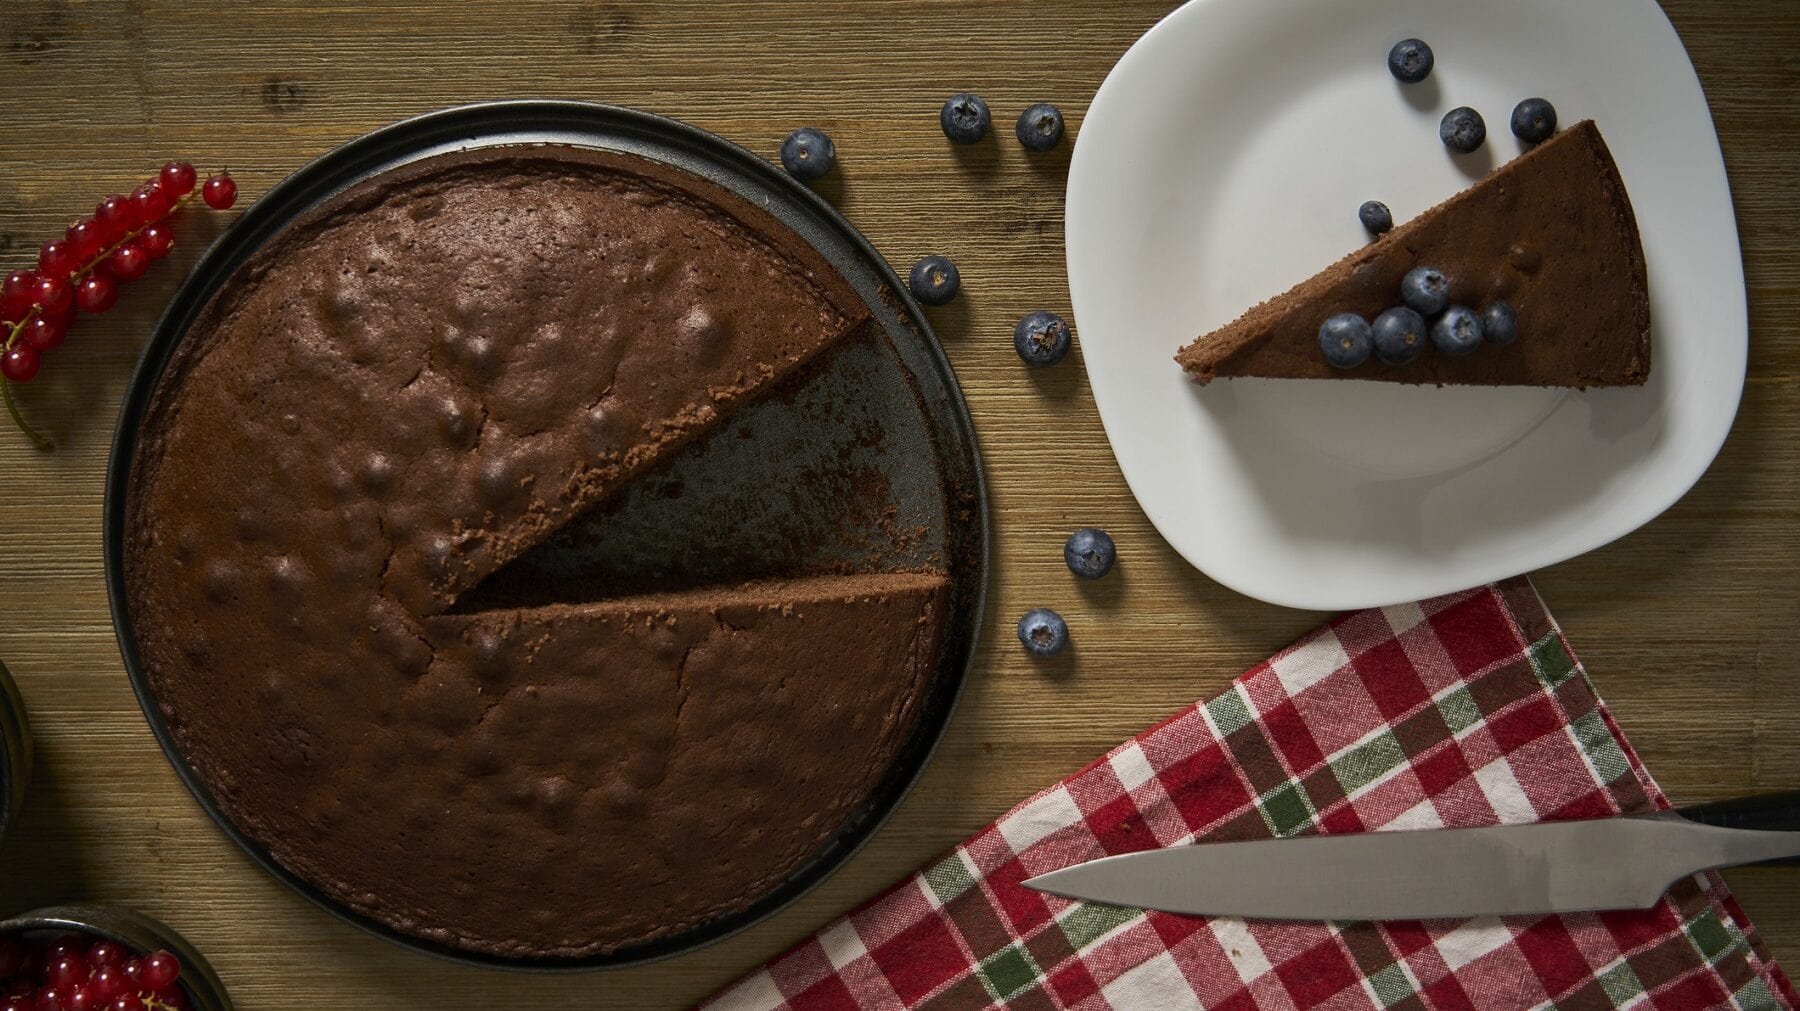 Ein angeschnittener Depression-Cake auf einem dunklen Kuchenteller steht auf einem braunen Tisch. Rechts neben dem Kuchen steht ein weißer Teller mit einem Stück des Kuchens. unter dem Teller liegt ein kariertes Handtuch mit einem Kuchenmesser.